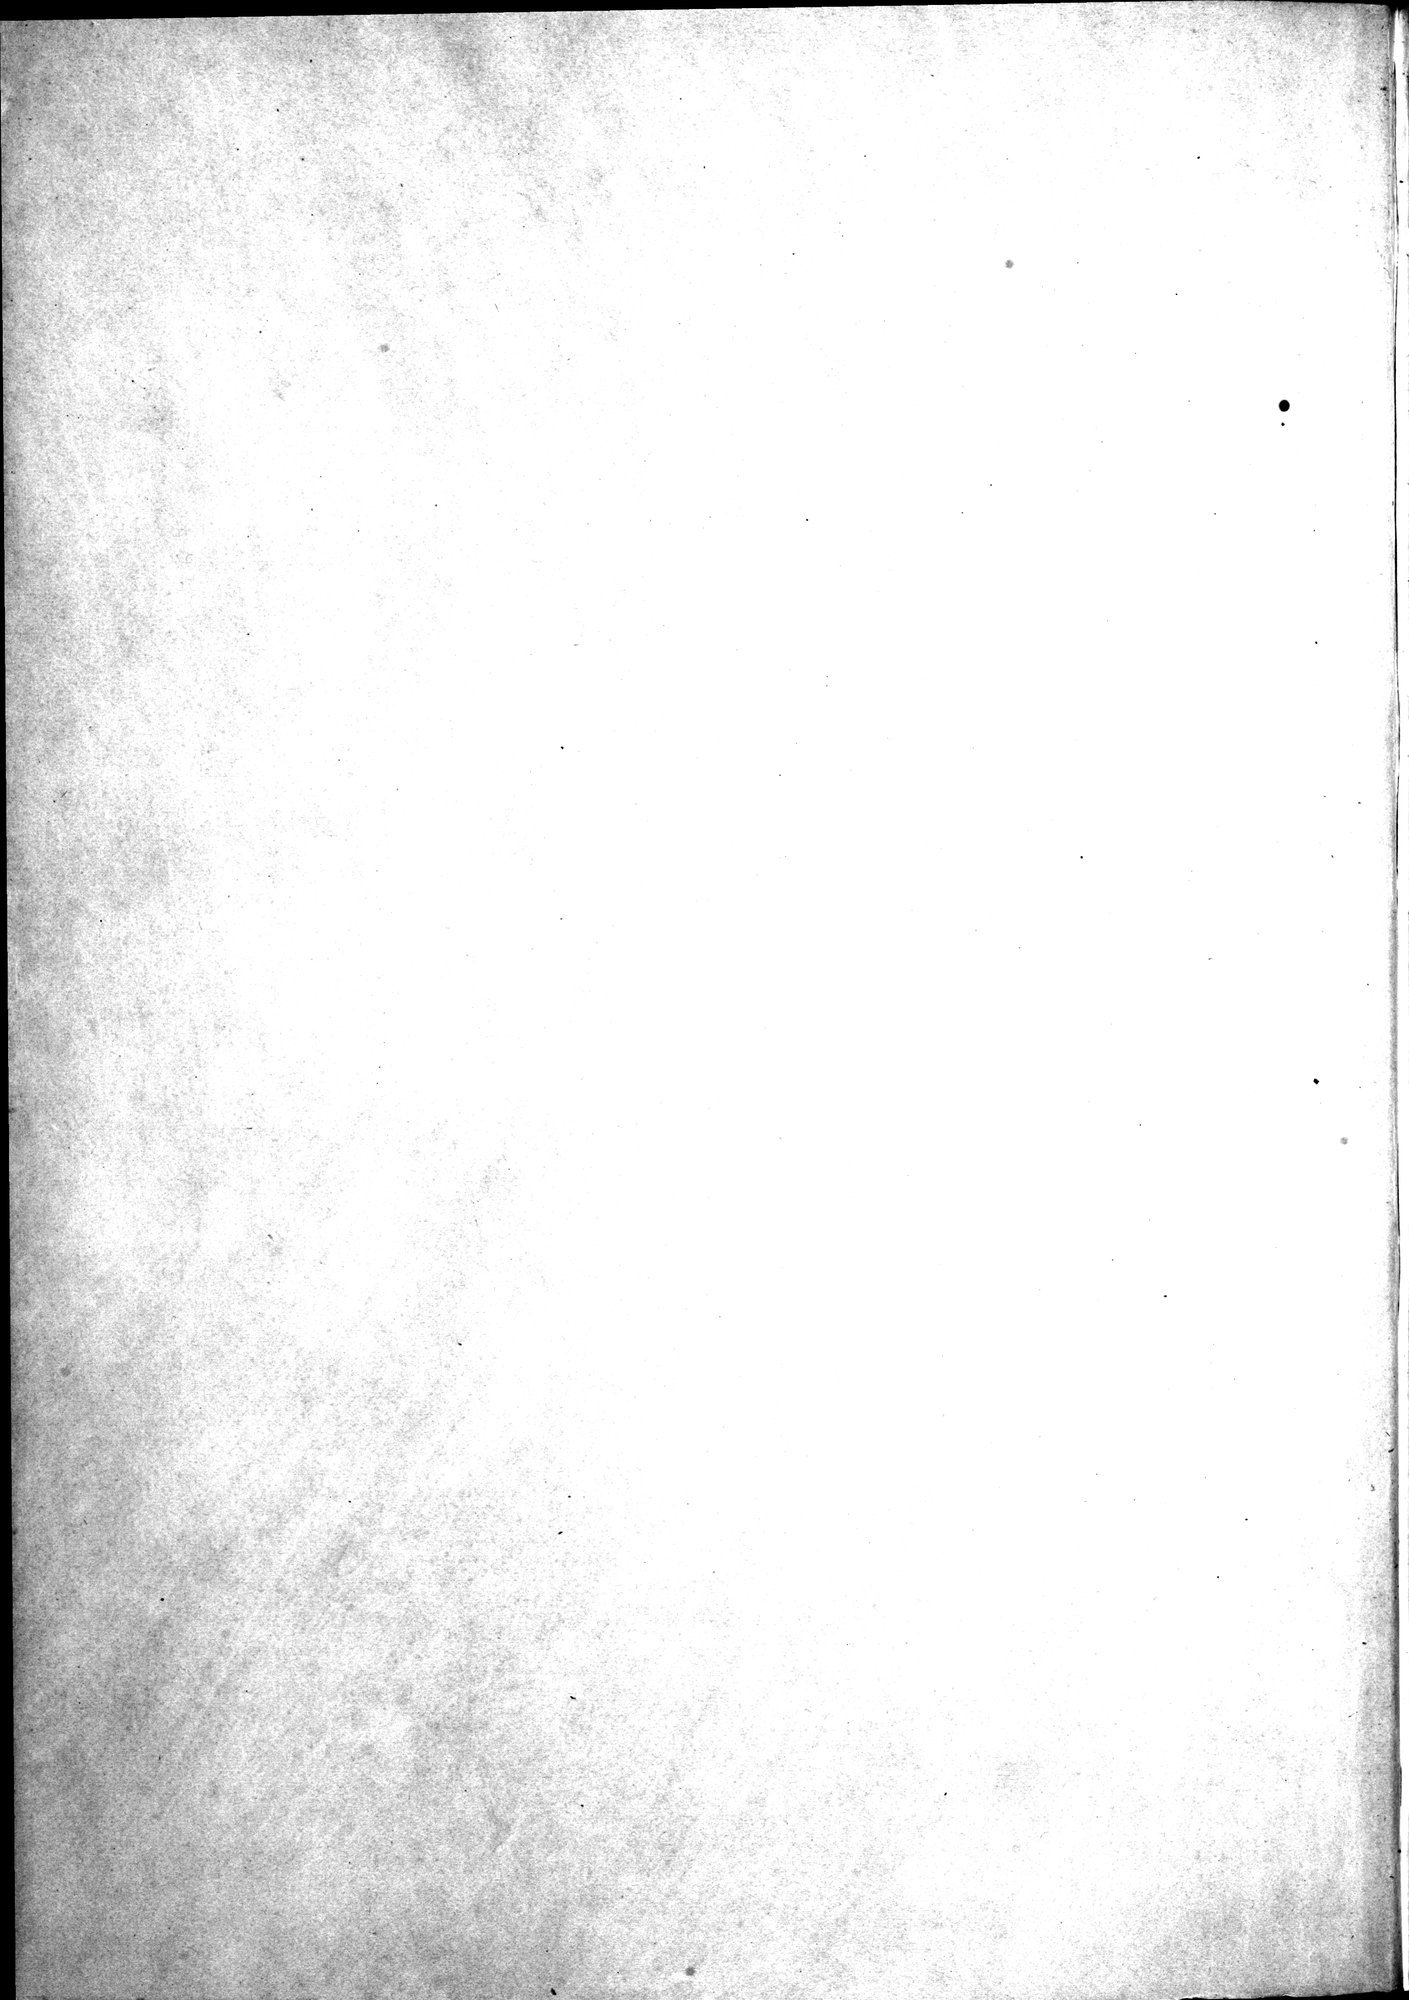 Kunstgeschichte der Seidenweberei : vol.2 / Page 4 (Grayscale High Resolution Image)